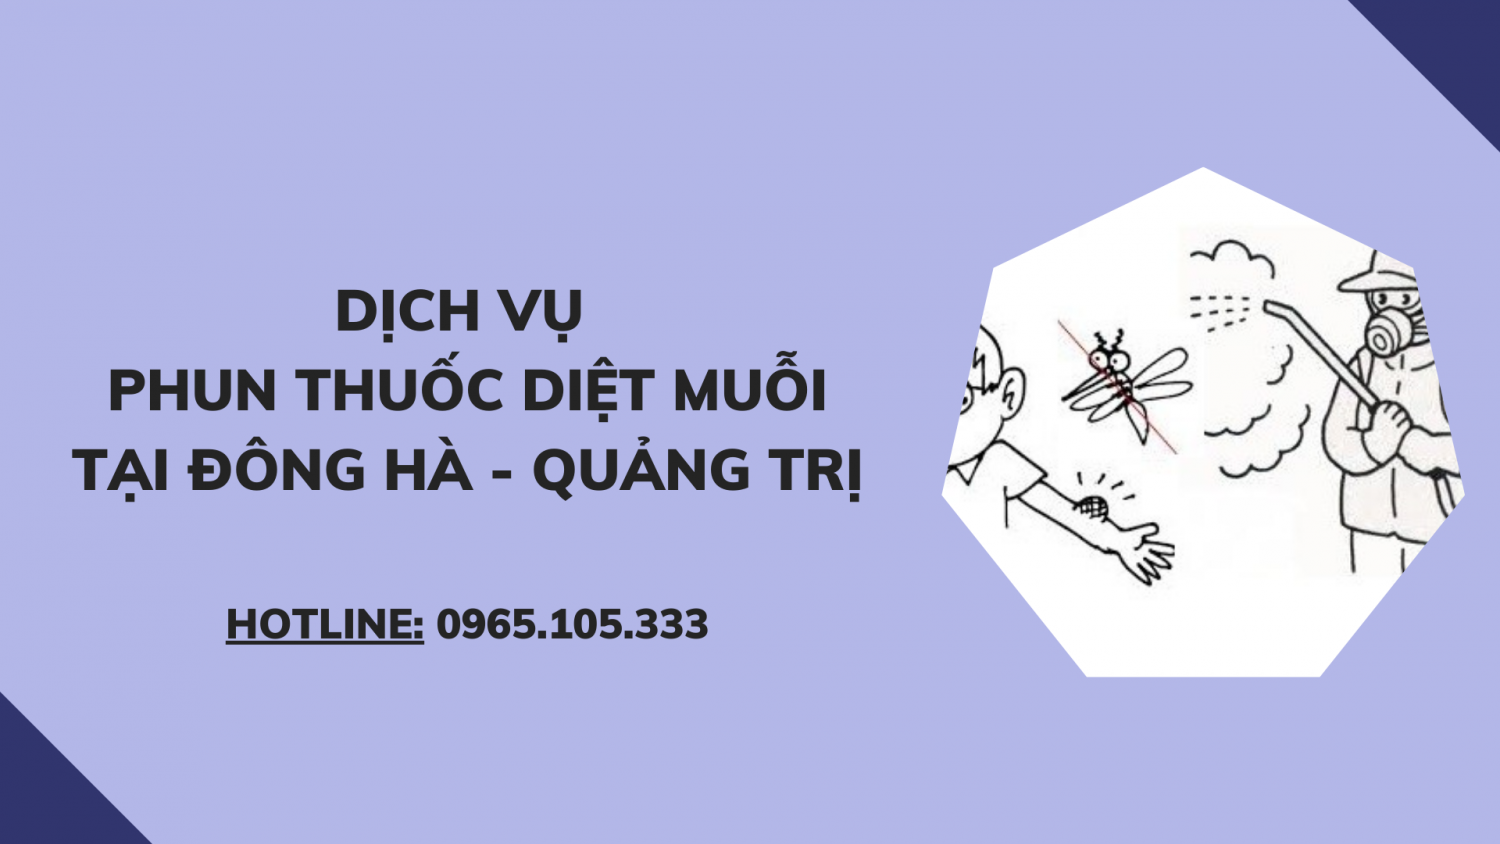 Dịch vụ phun thuốc diệt muỗi tại Đông Hà - Quảng Trị